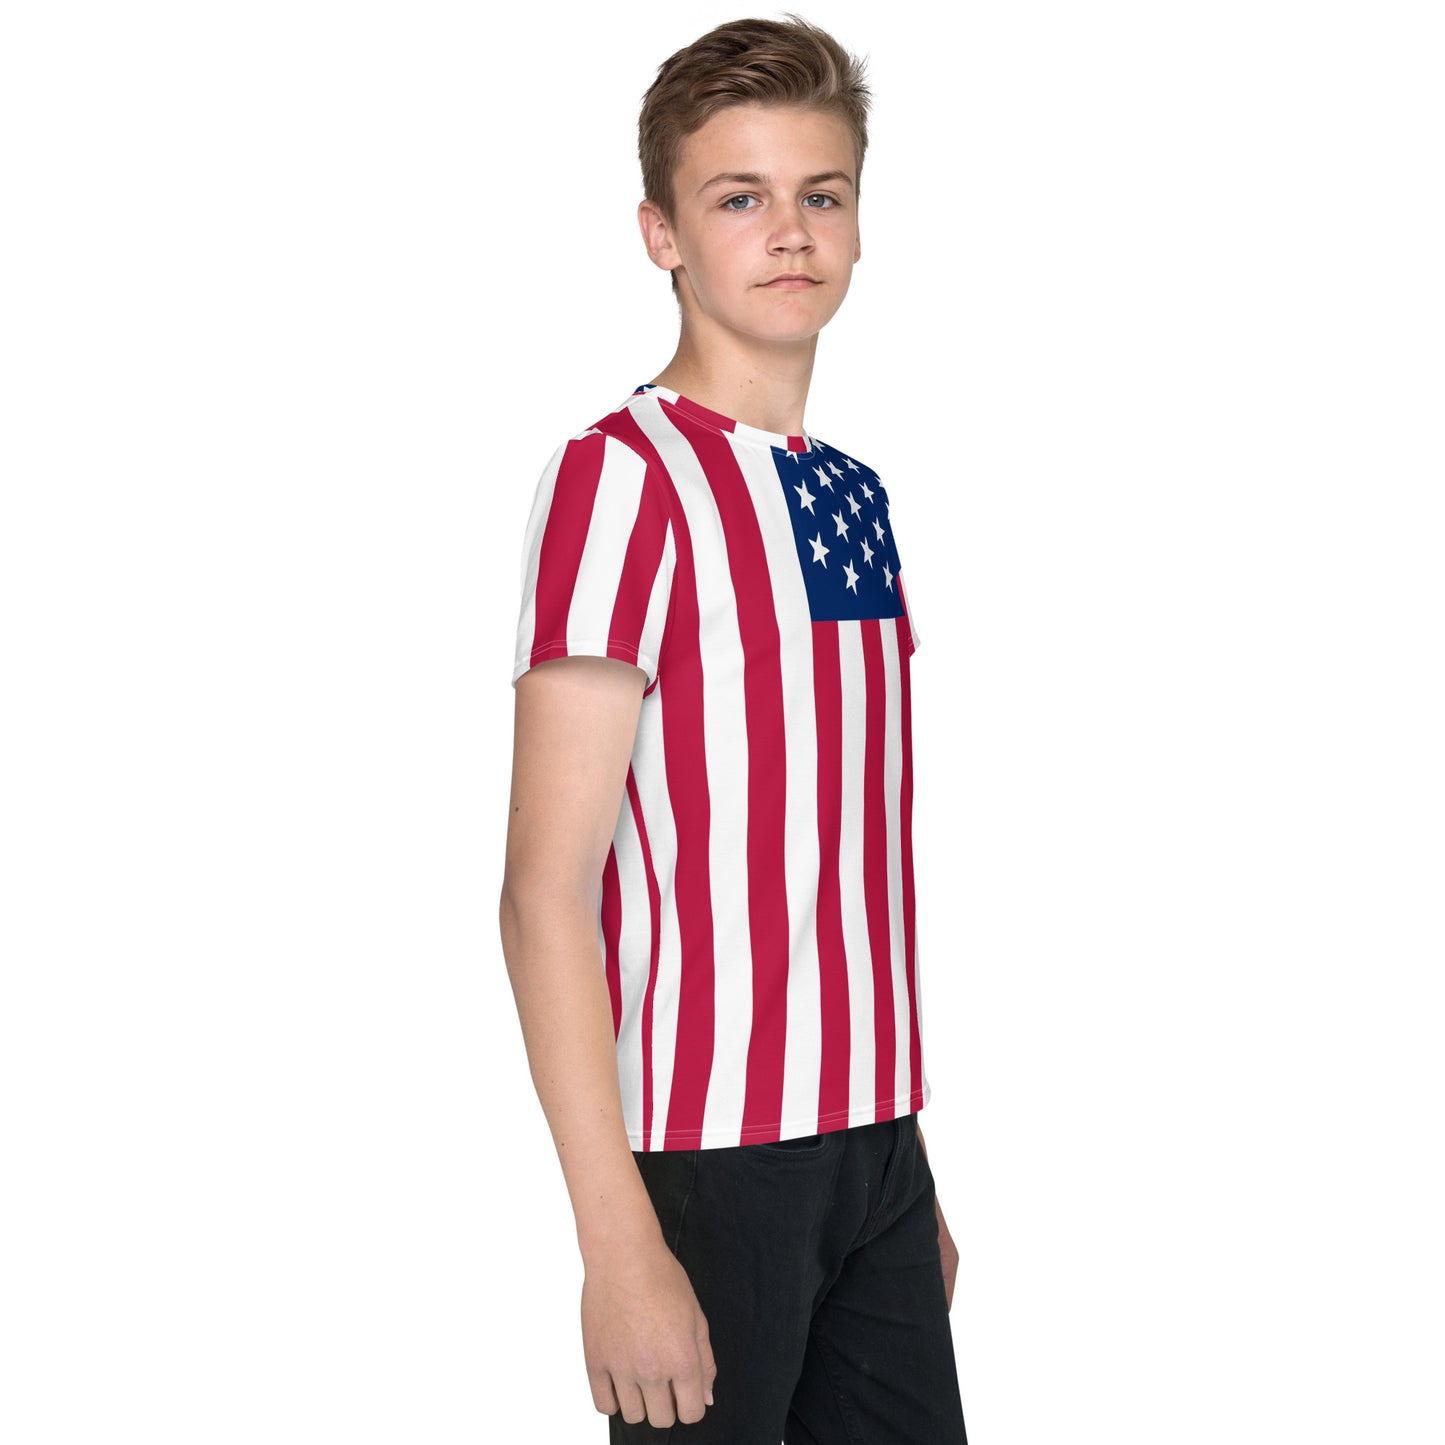 USA FLAG SHIRT (UNISEX) Youth